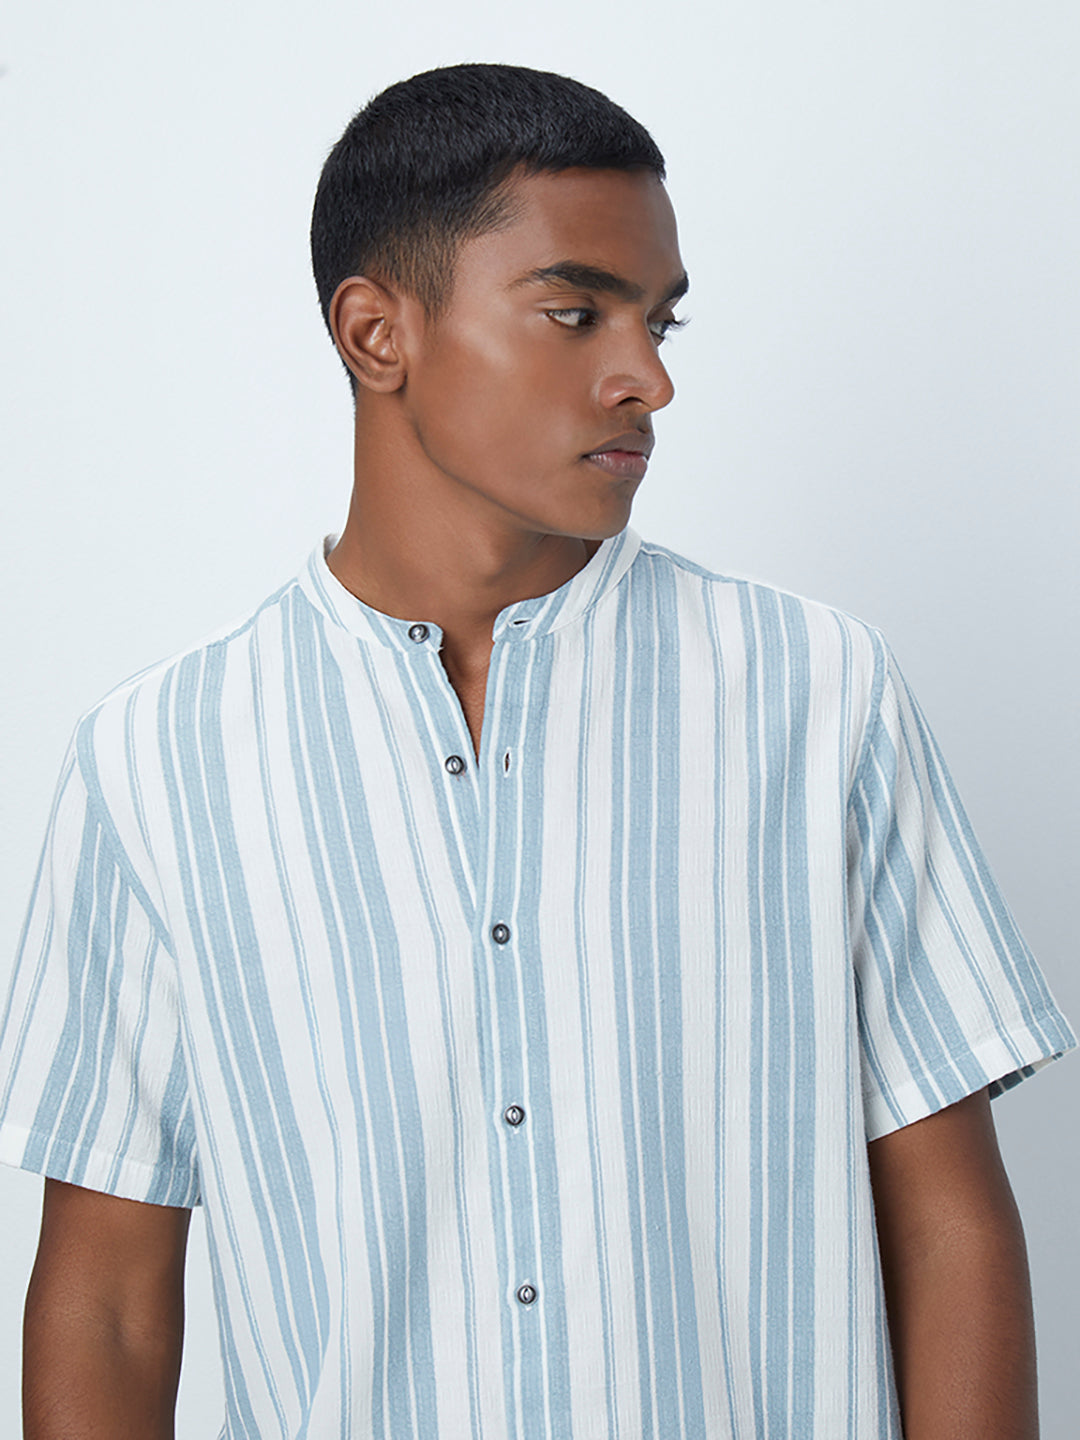 ETA Teal Stripe Pattern Shirt